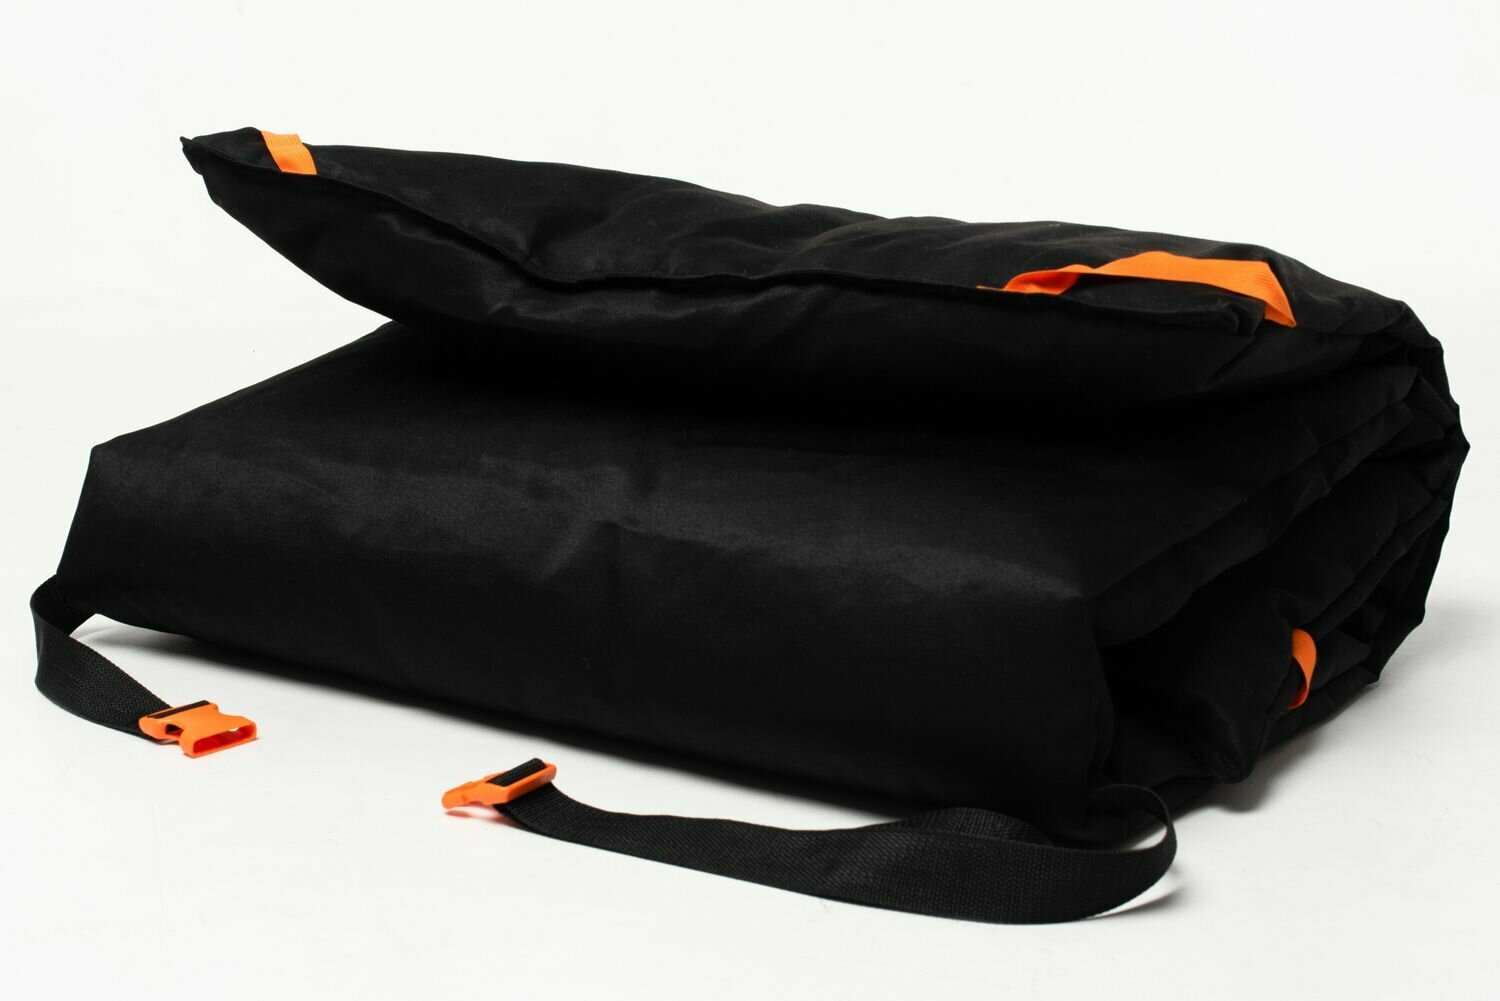 Теплая накидка-матрац "6 углов" 190/70 см, черно-оранжевый, на раскладушку, туристическую кровать